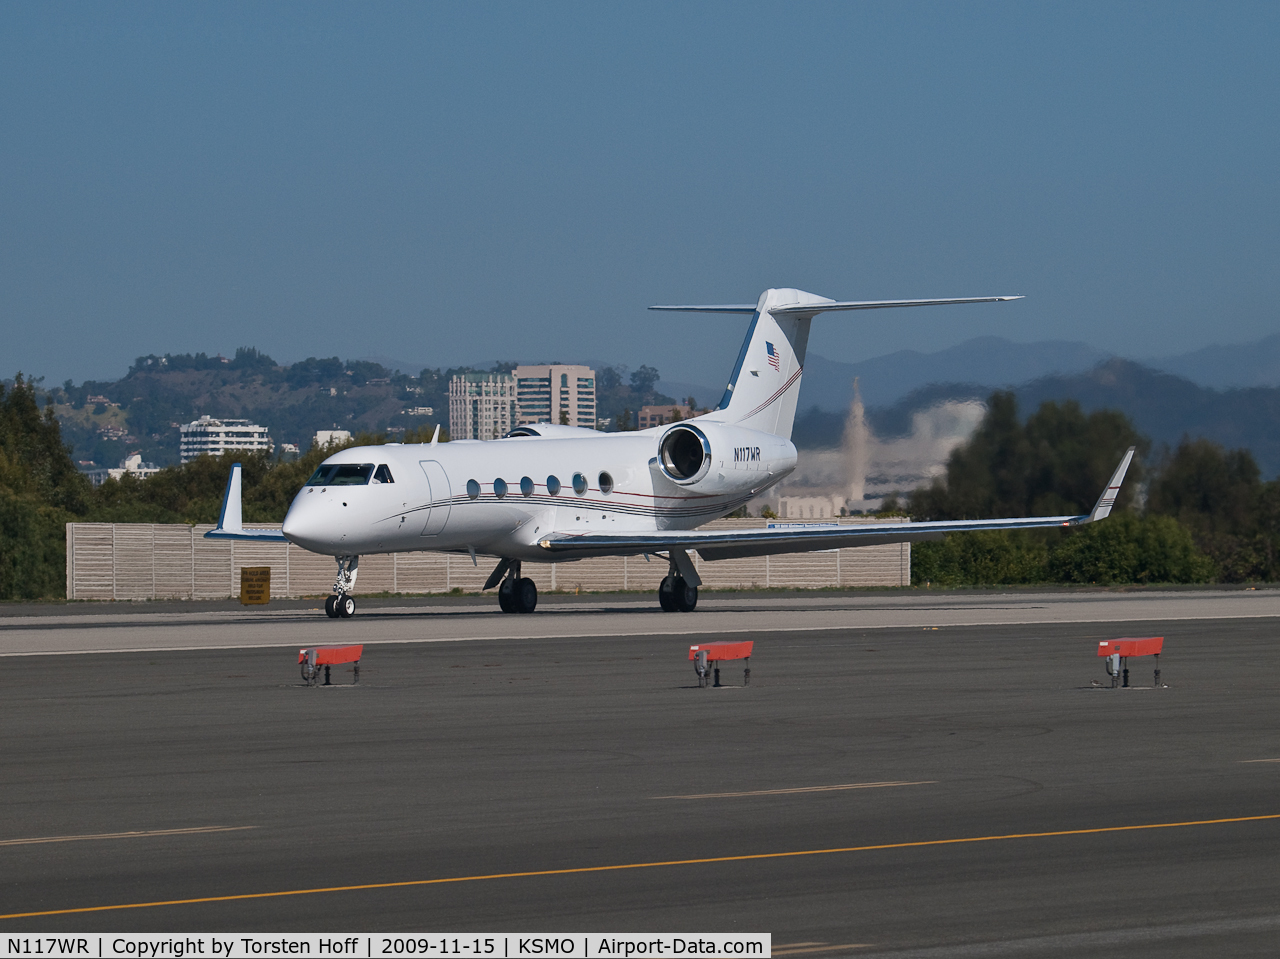 N117WR, 2005 Gulfstream Aerospace GIV-X (G350) C/N 4015, N117WR departing from RWY 21